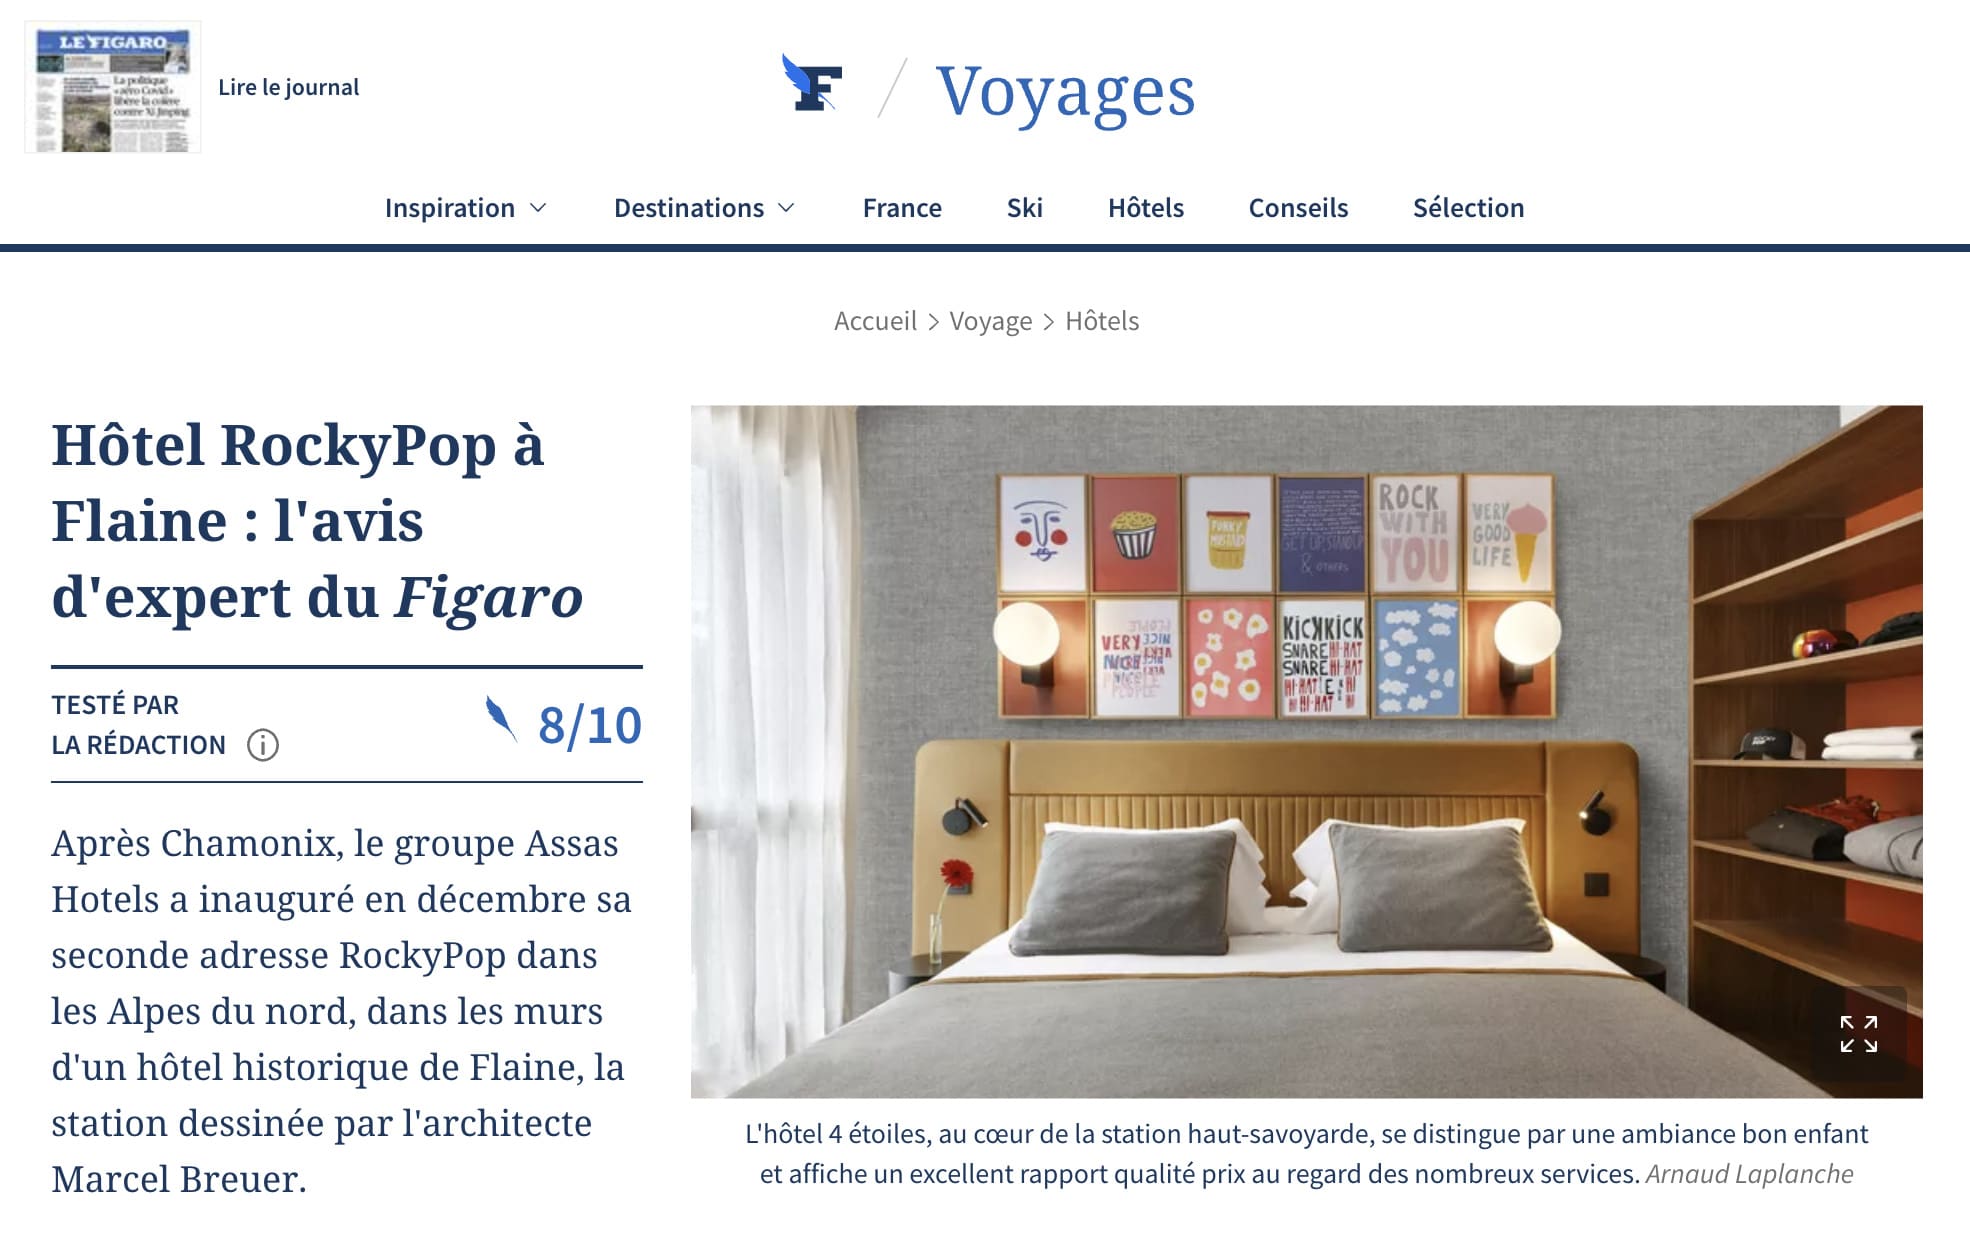 Figaro VoyagesHotel RockyPop a Flaine lavis dexpert du Figaro